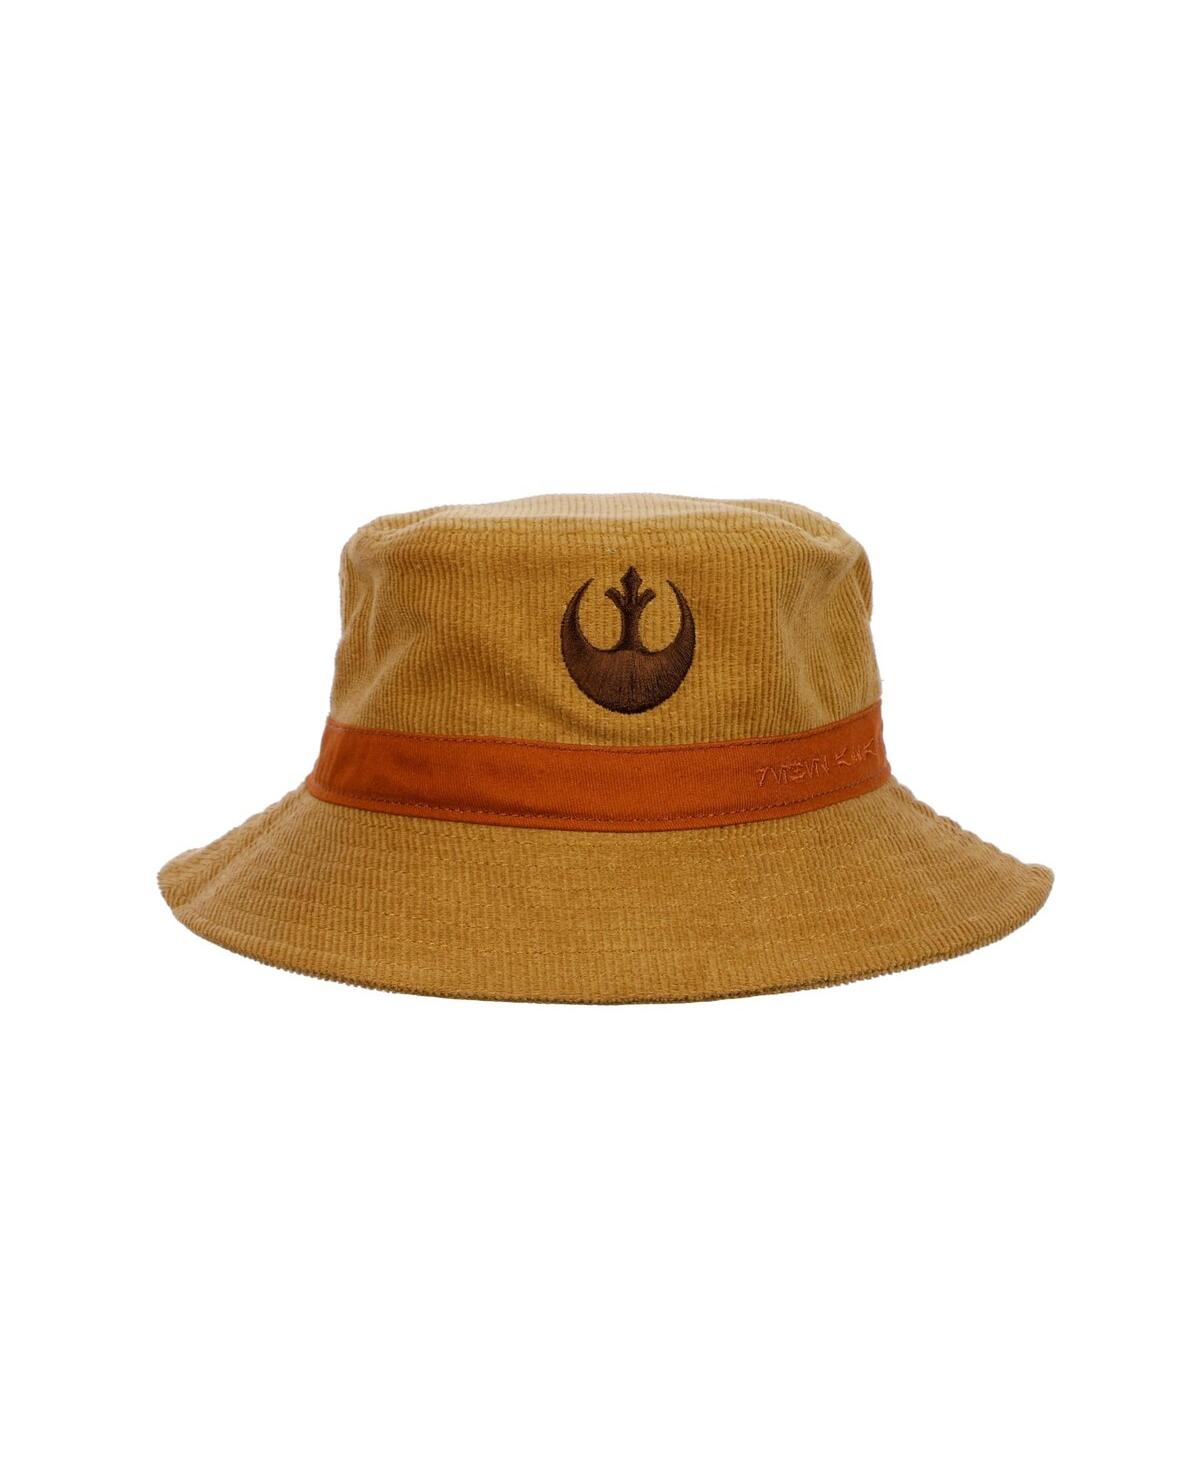 Shop Heroes & Villains Men's And Women's Brown Star Wars Rebel Bucket Hat